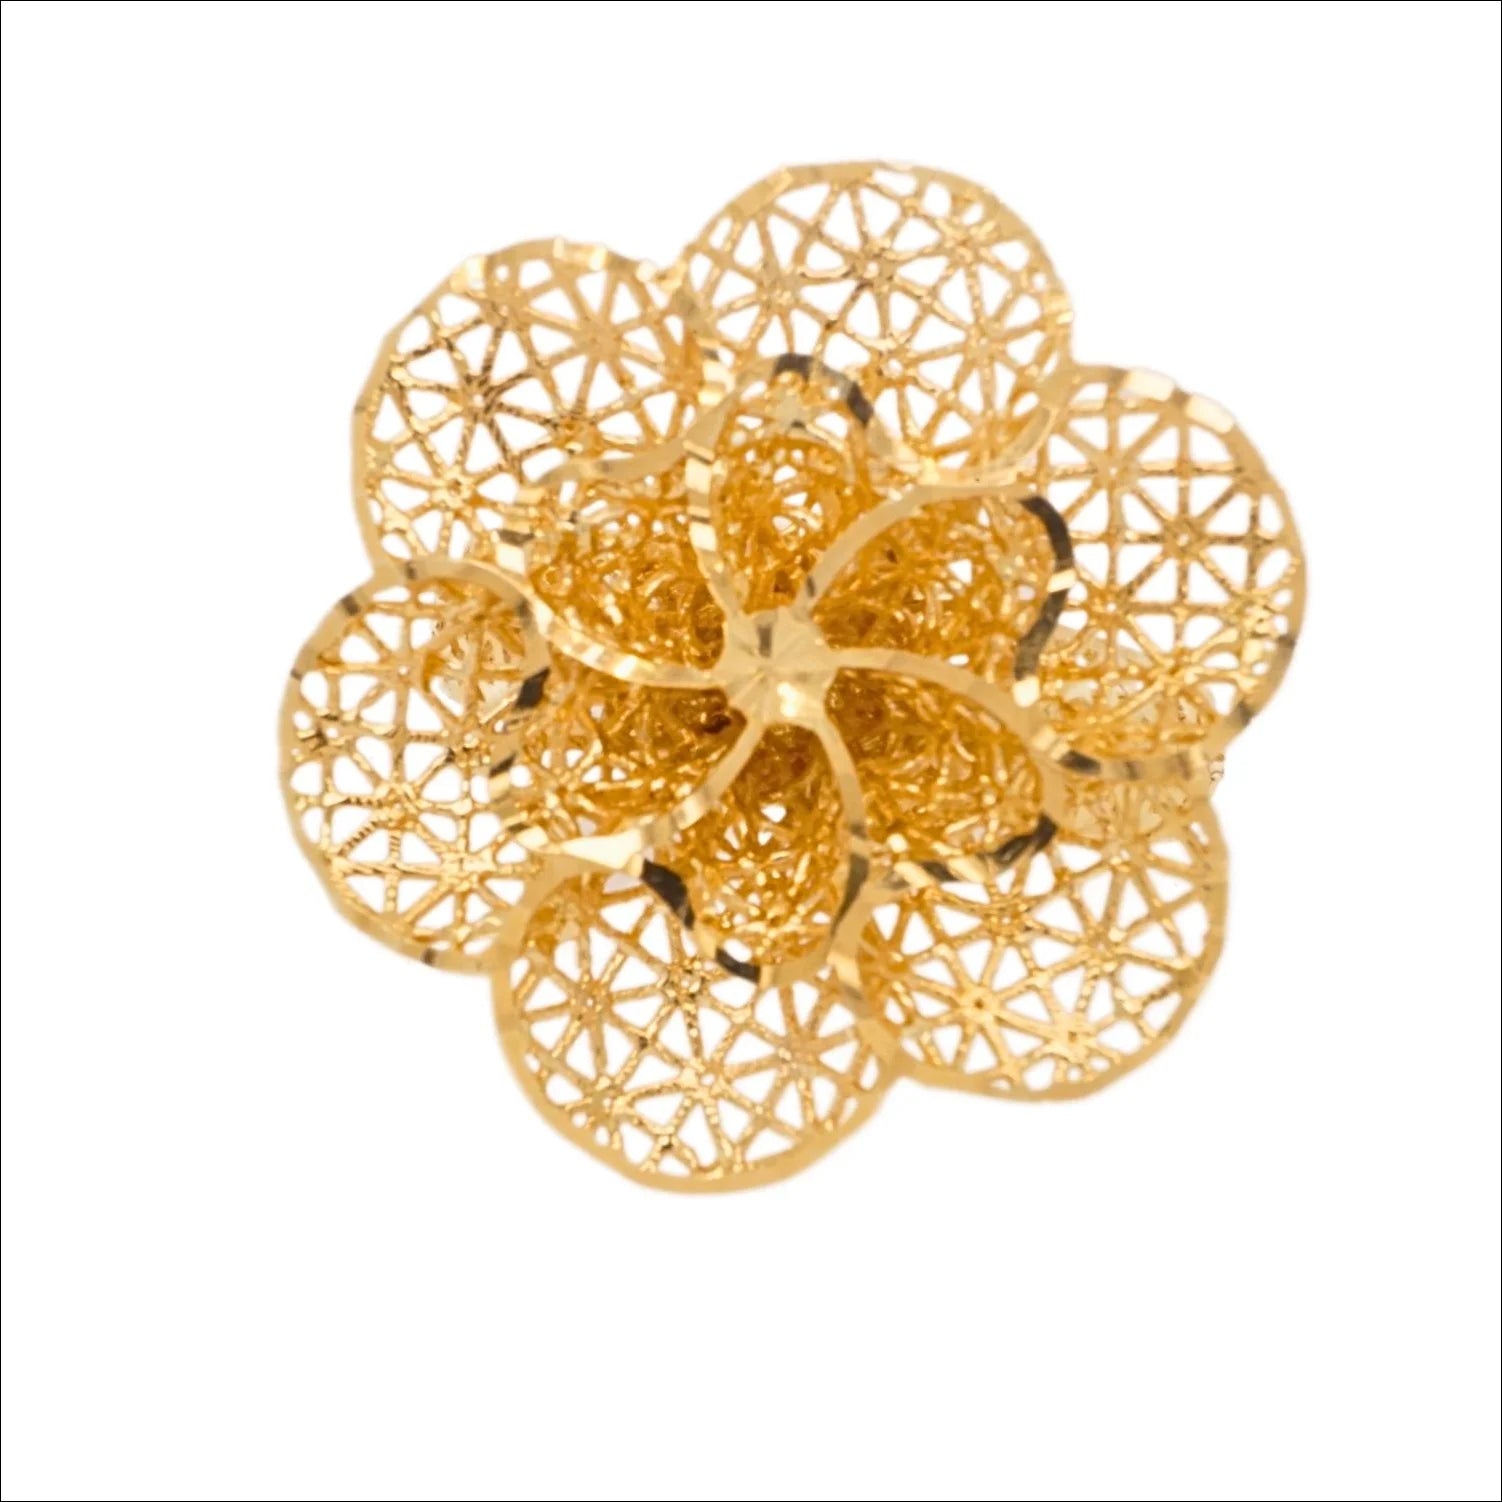 Eternal bloom 18k gold flower ring | Rings